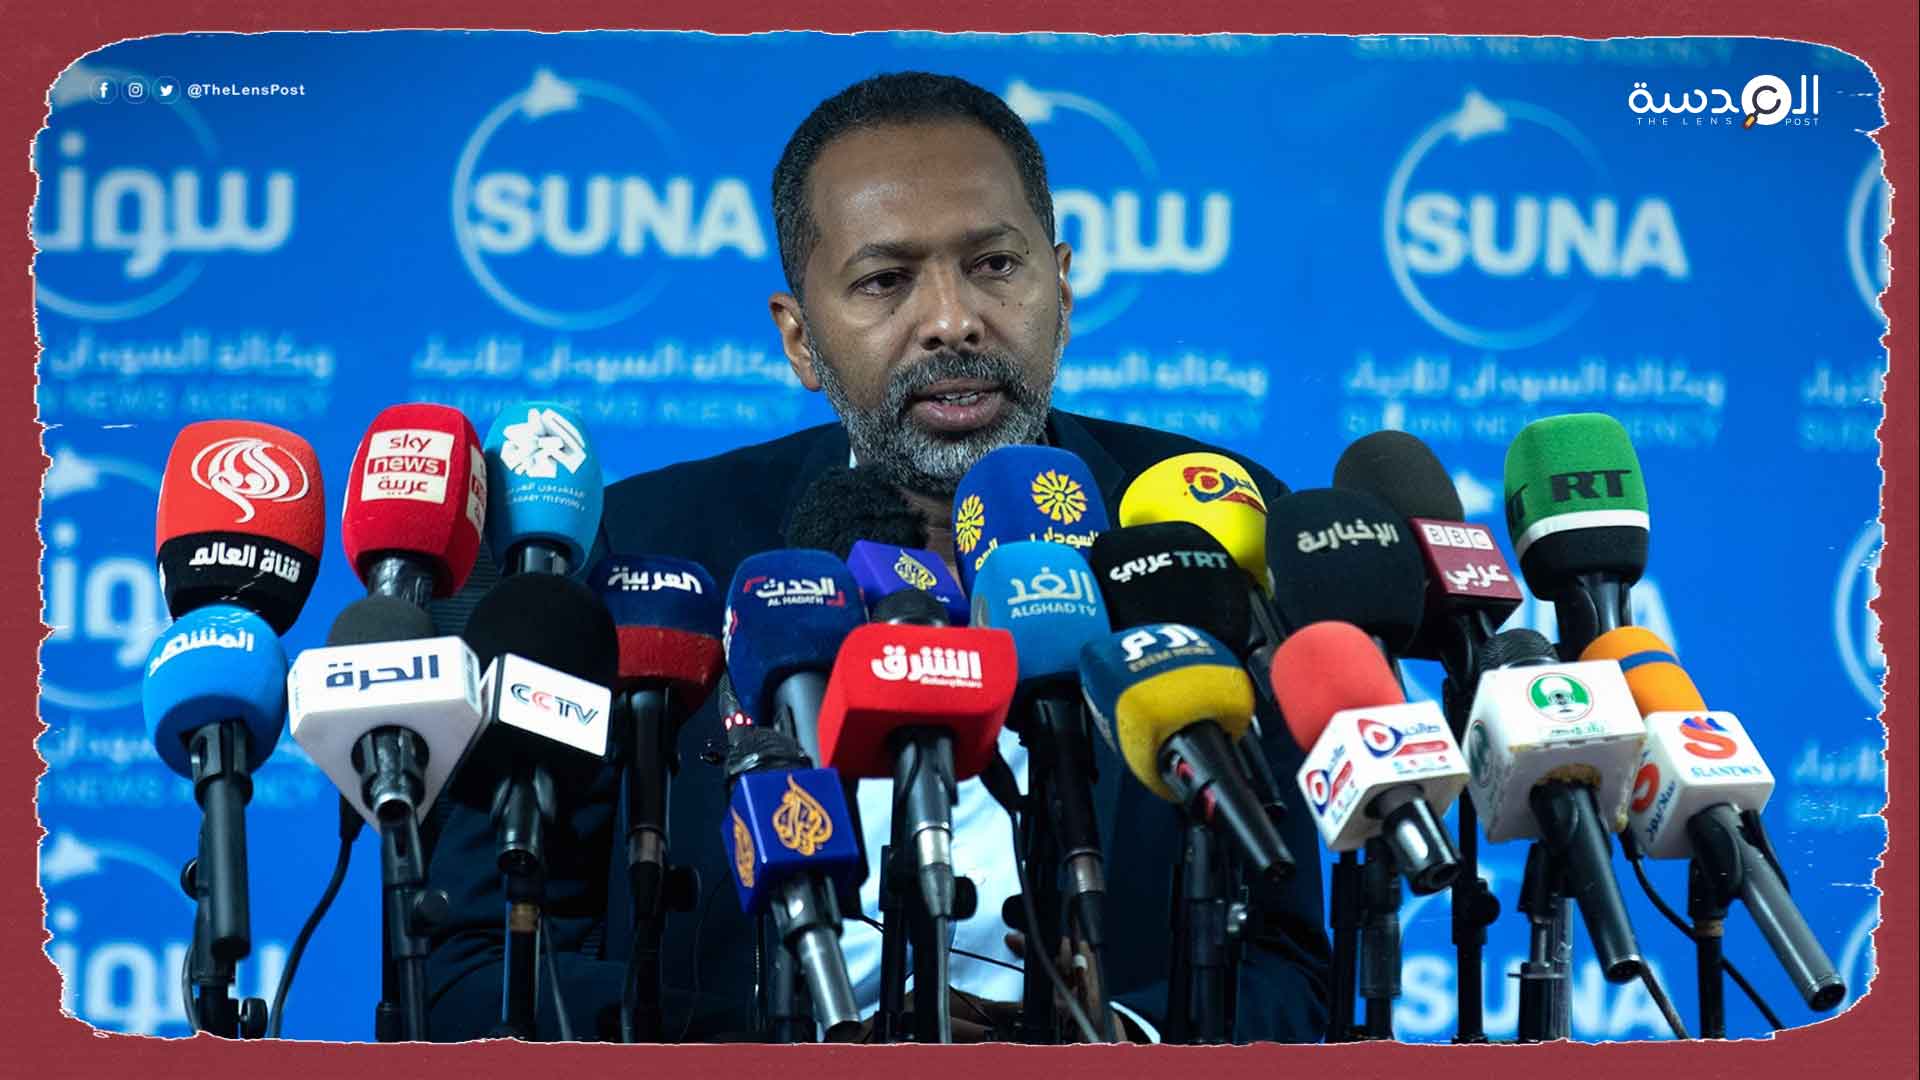 مسؤول سوداني: "قضايا عالقة" تؤجل توقيع الاتفاق السياسي النهائي